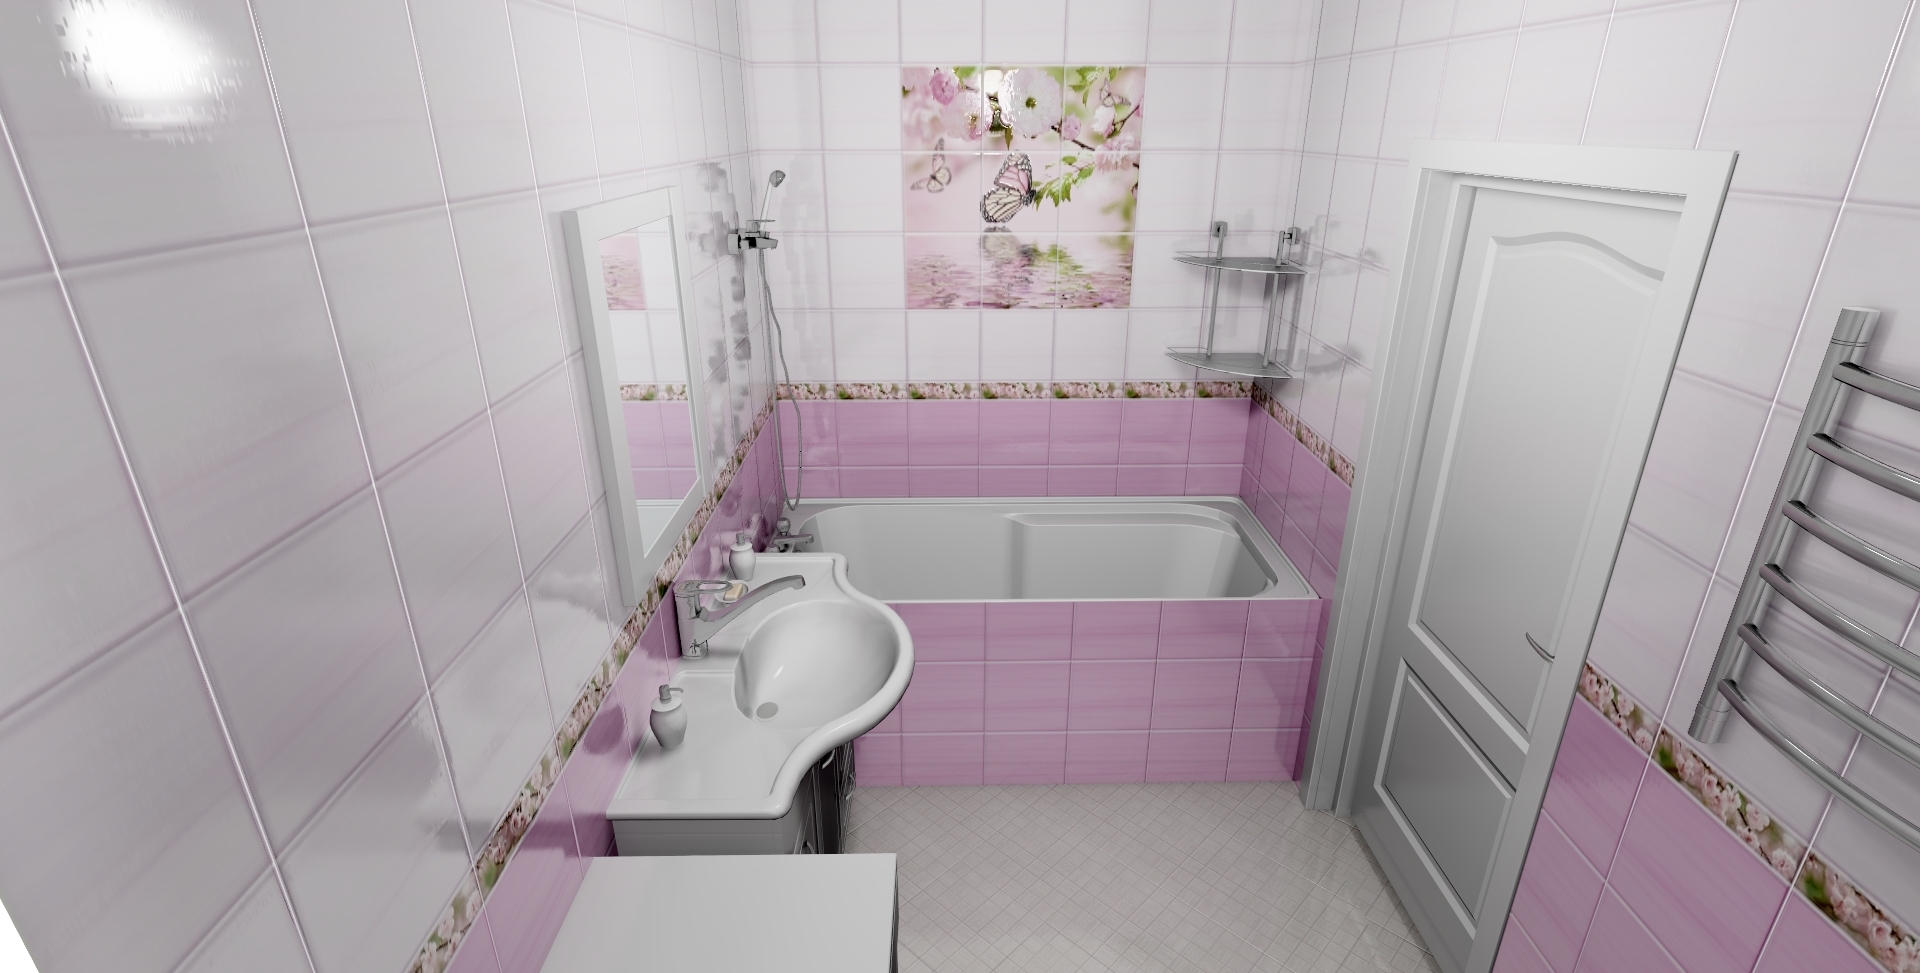 панели в ванну дизайн фото